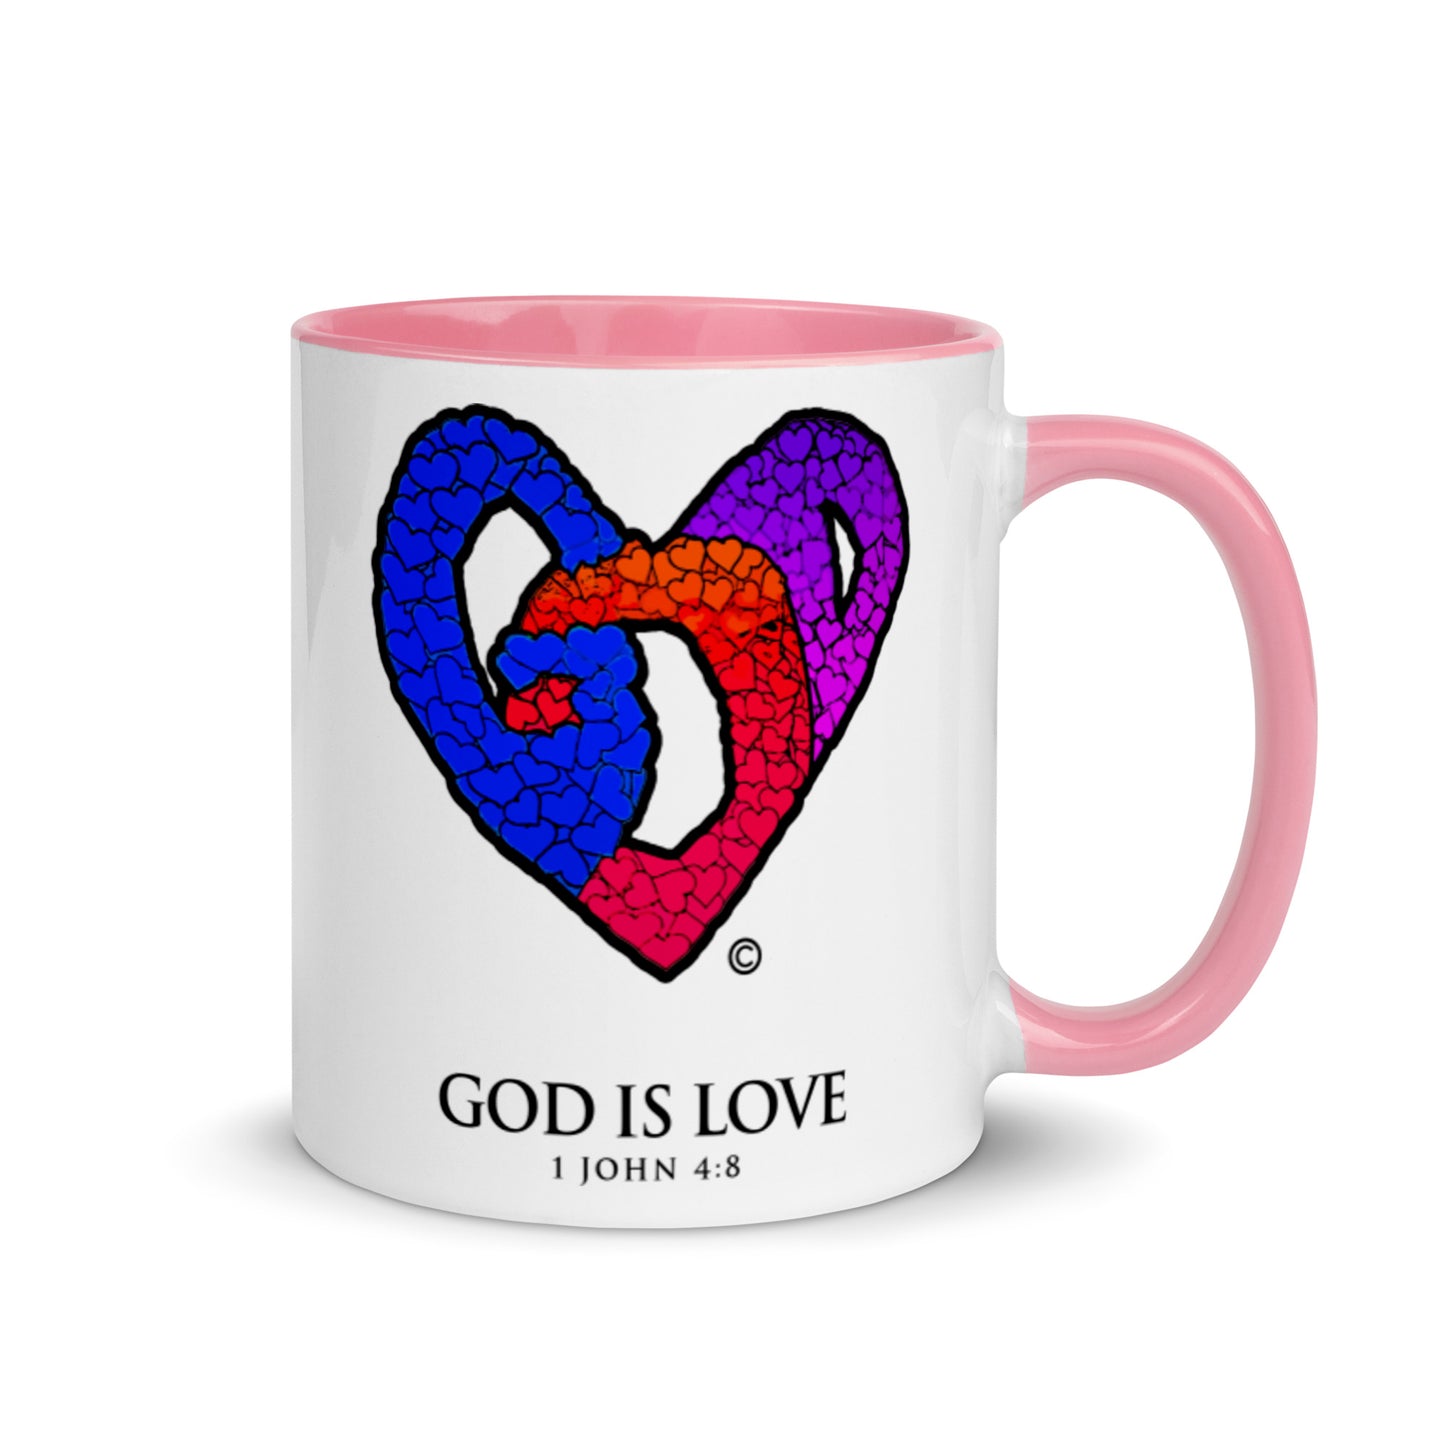 God is Love Mug with Color Inside